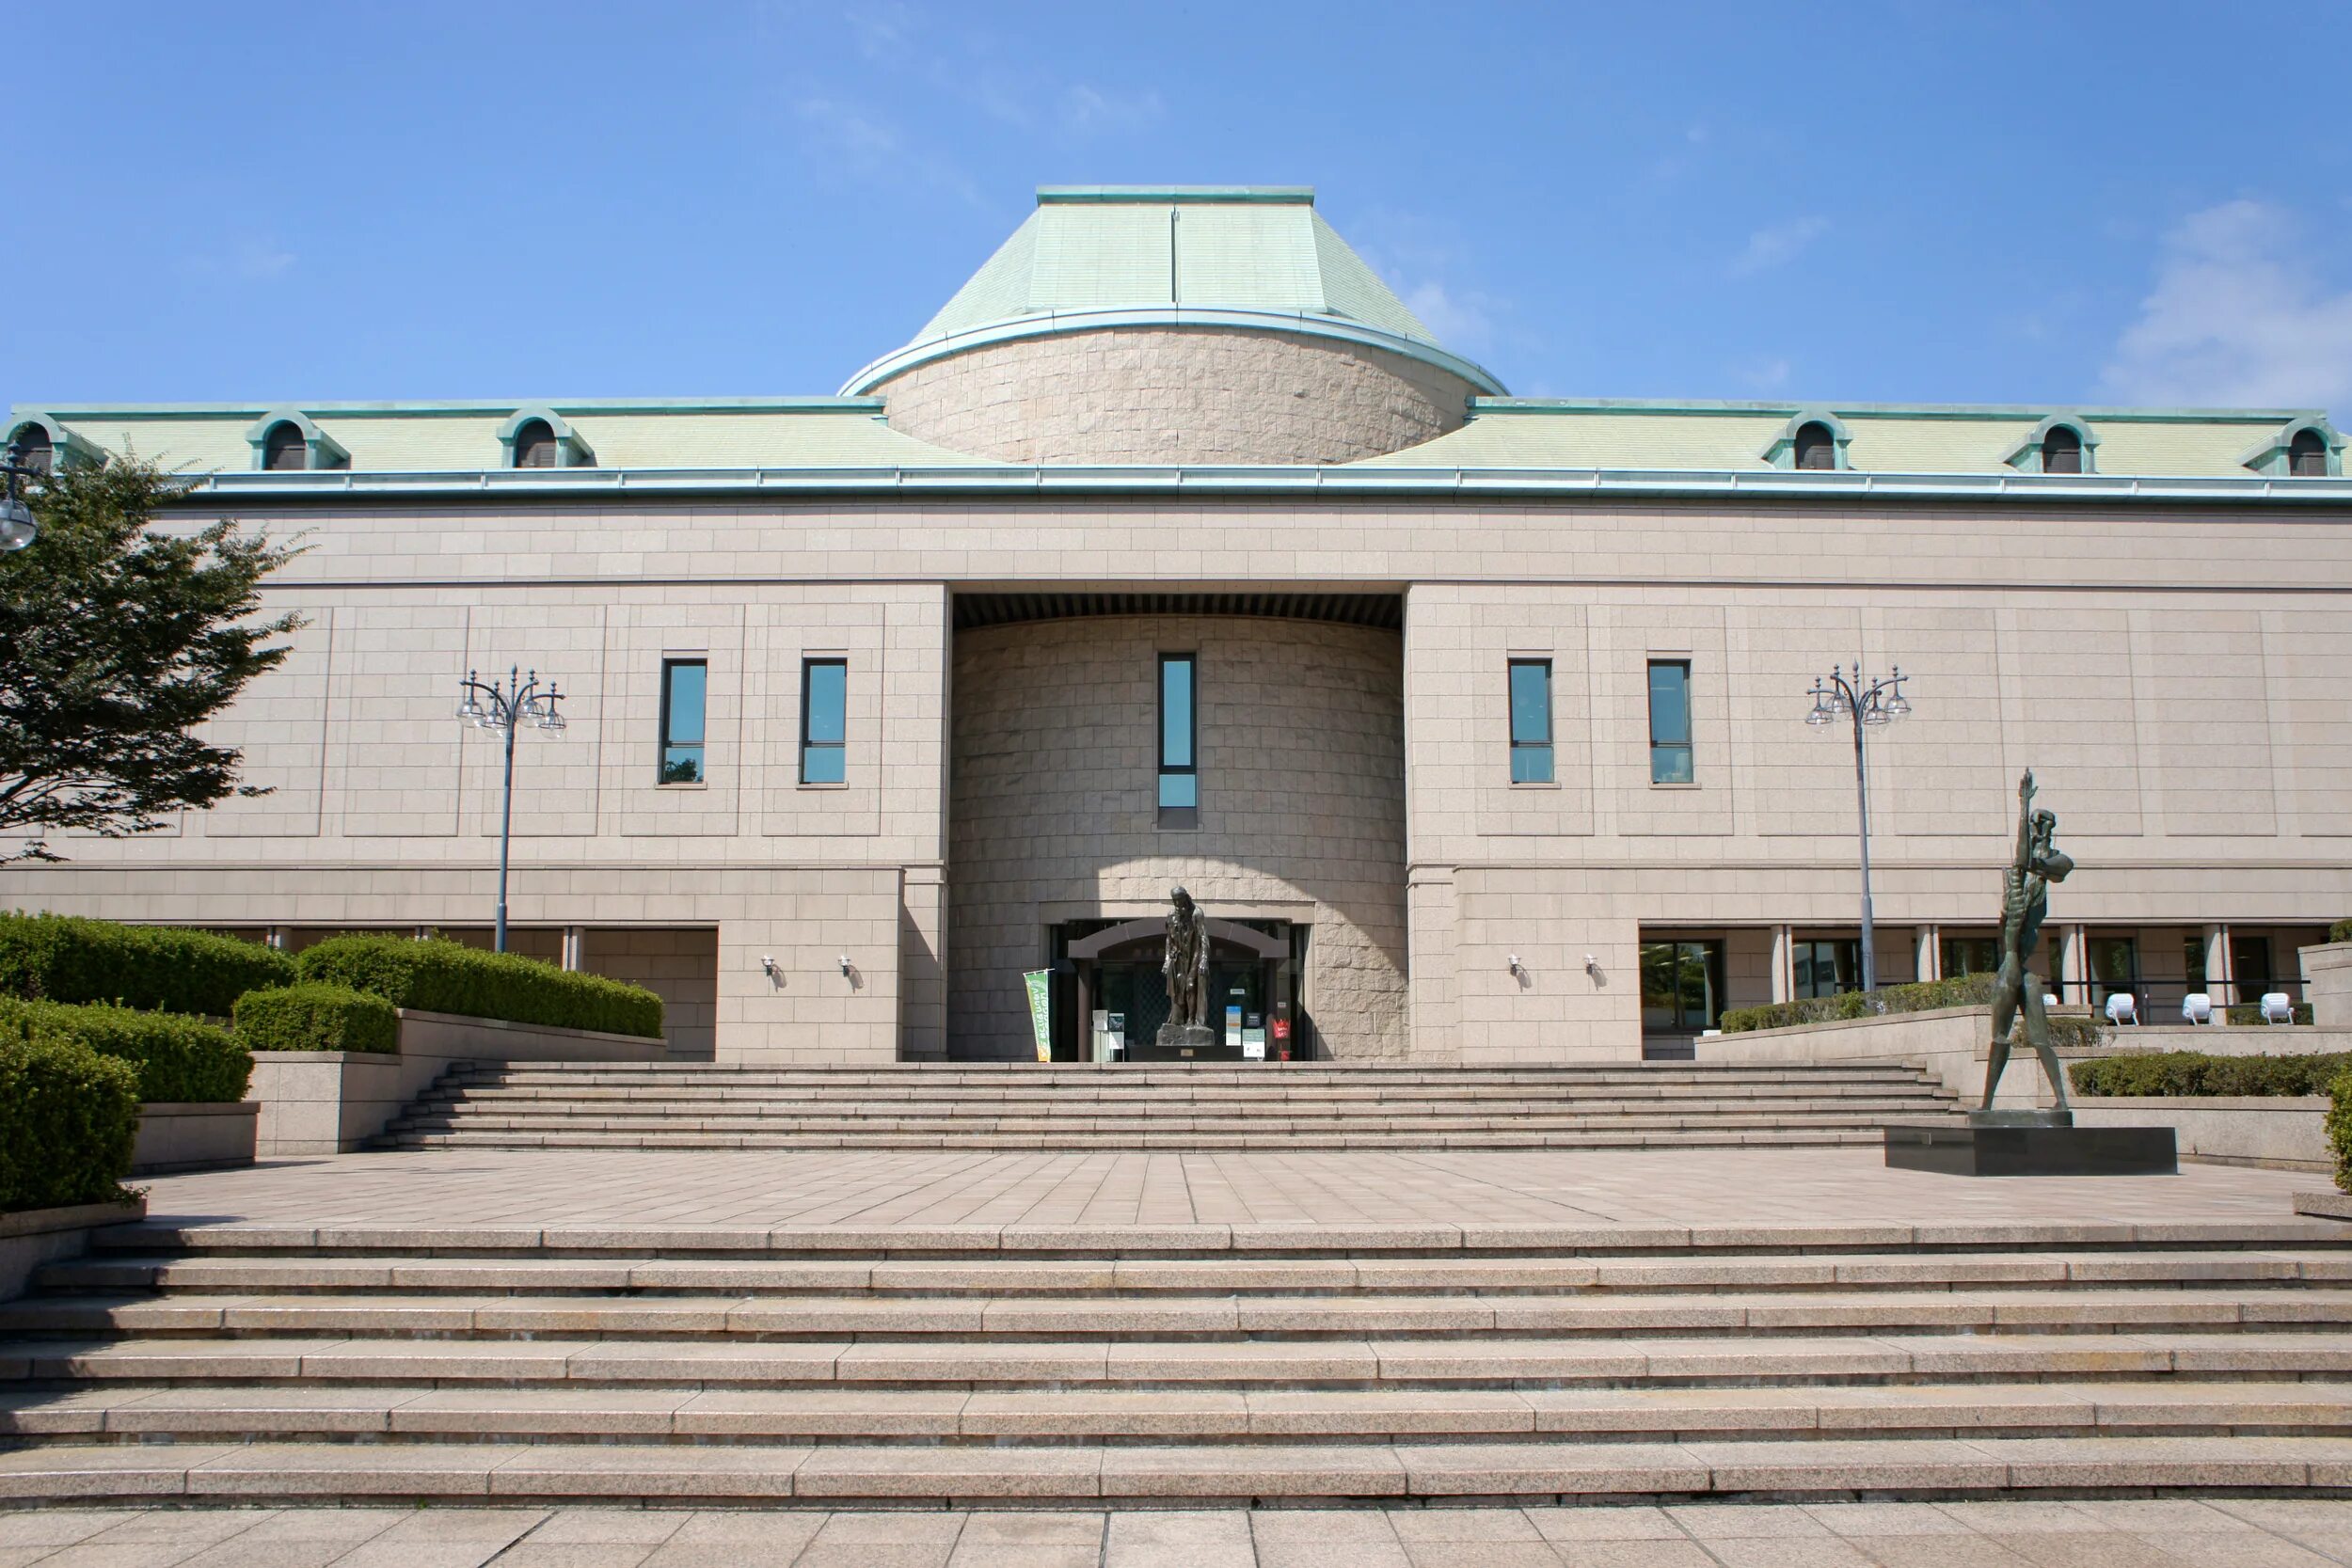 Новый городской музей. Музеи города кола здания. Фото здания театра и музее Японии. Кагошима. Музей города Хони Грузия.